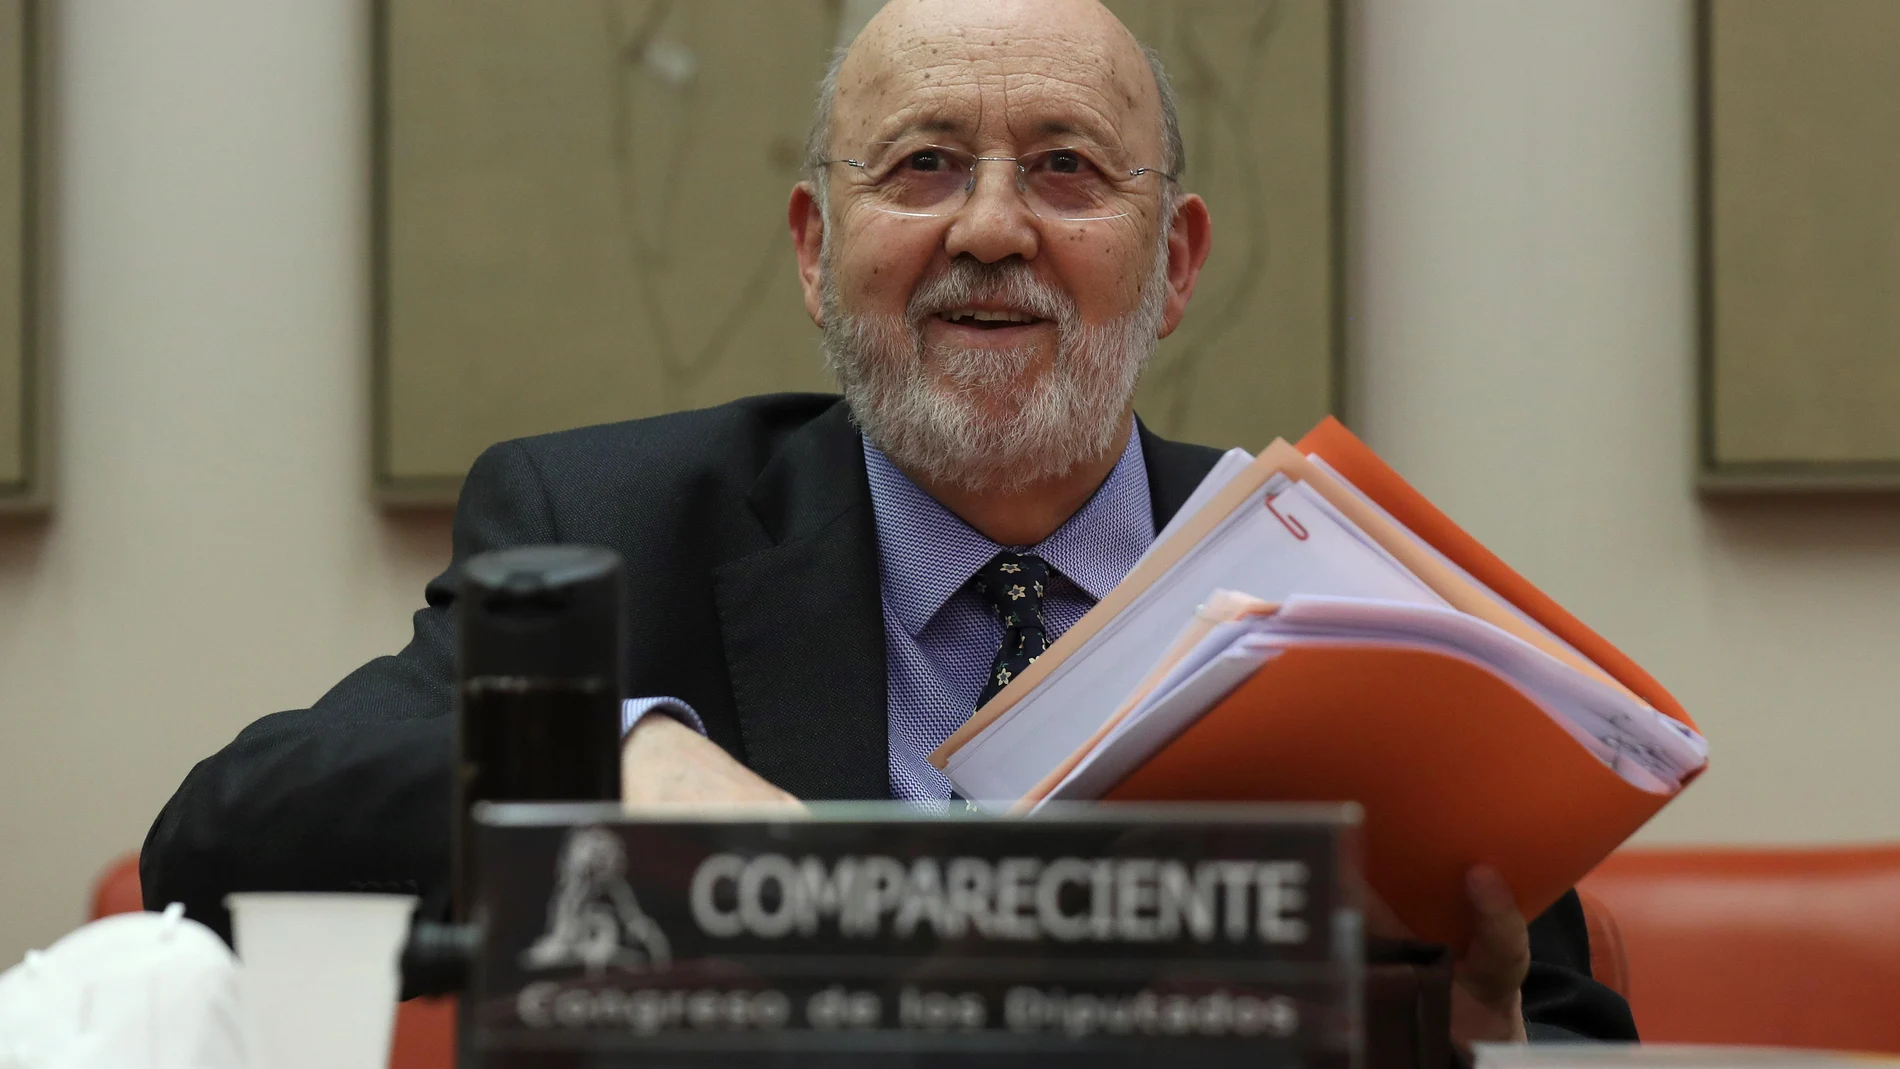 El presidente del Centro de Investigaciones Sociológicas, José Felix Tezános, comparece en la Comisión Constitucional del Congreso de los Diputados